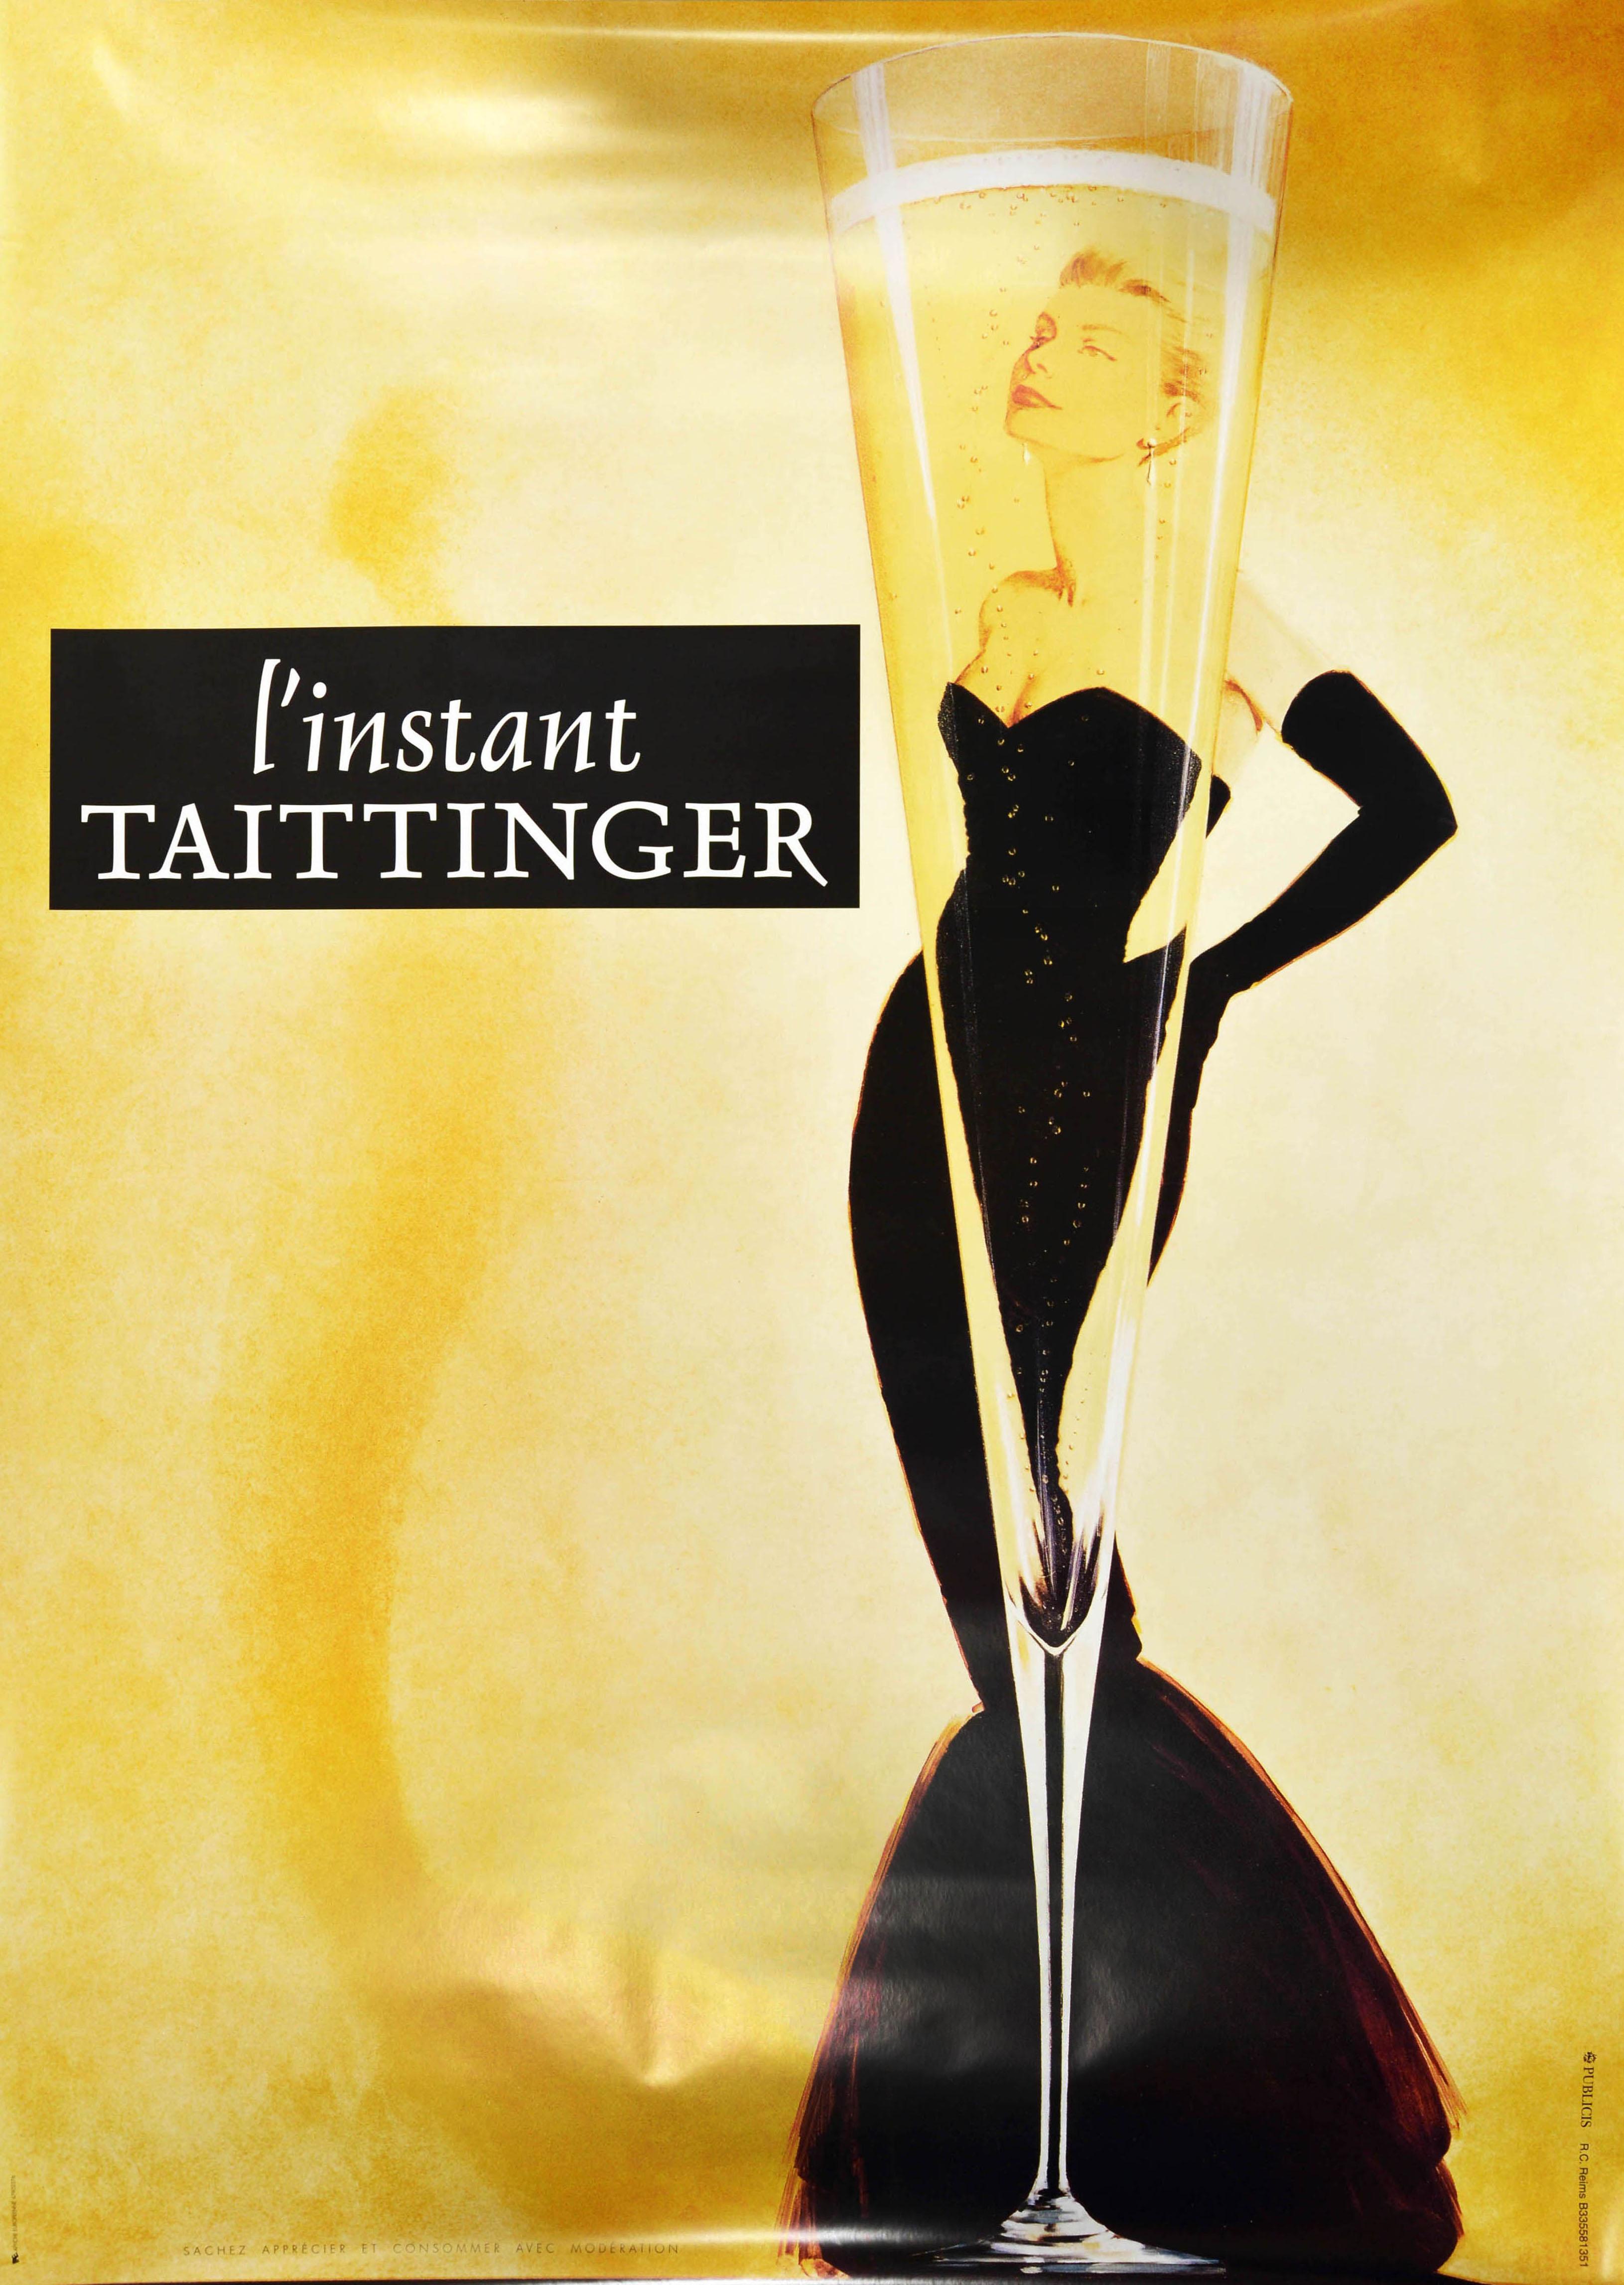 Original Vintage Drink Advertising Poster L'Instant Taittinger Champagne Design